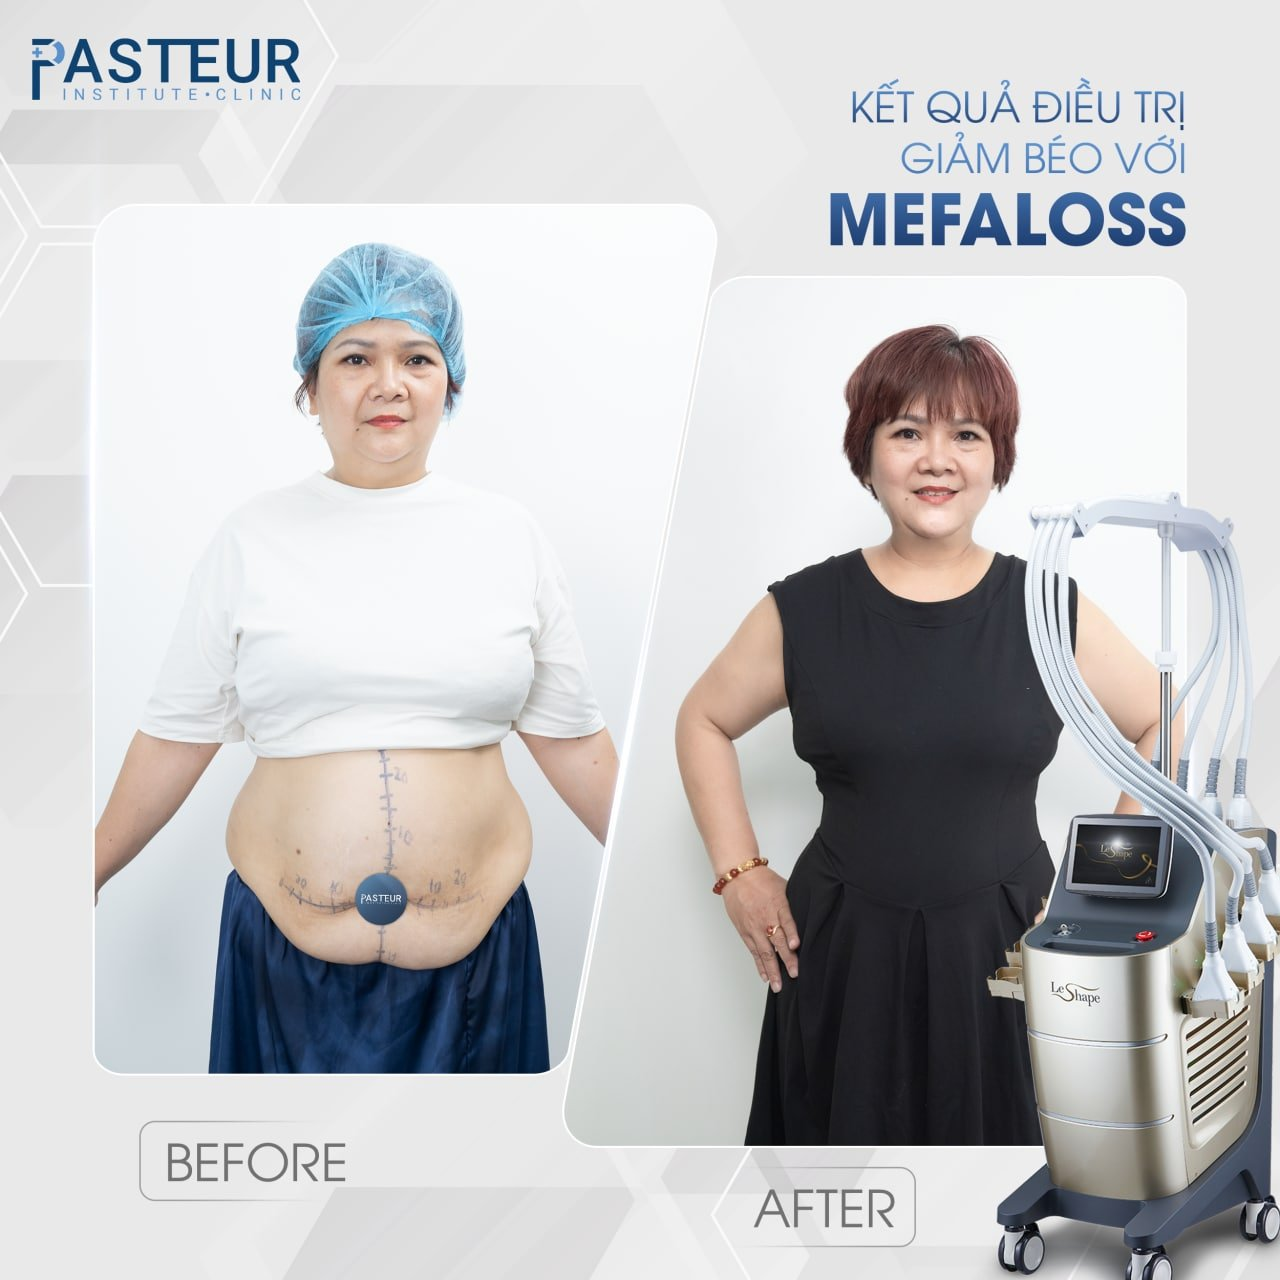 Trải nghiệm công nghệ giảm mỡ hiện đại chuẩn y khoa tại Viện giảm béo Pasteur - 6